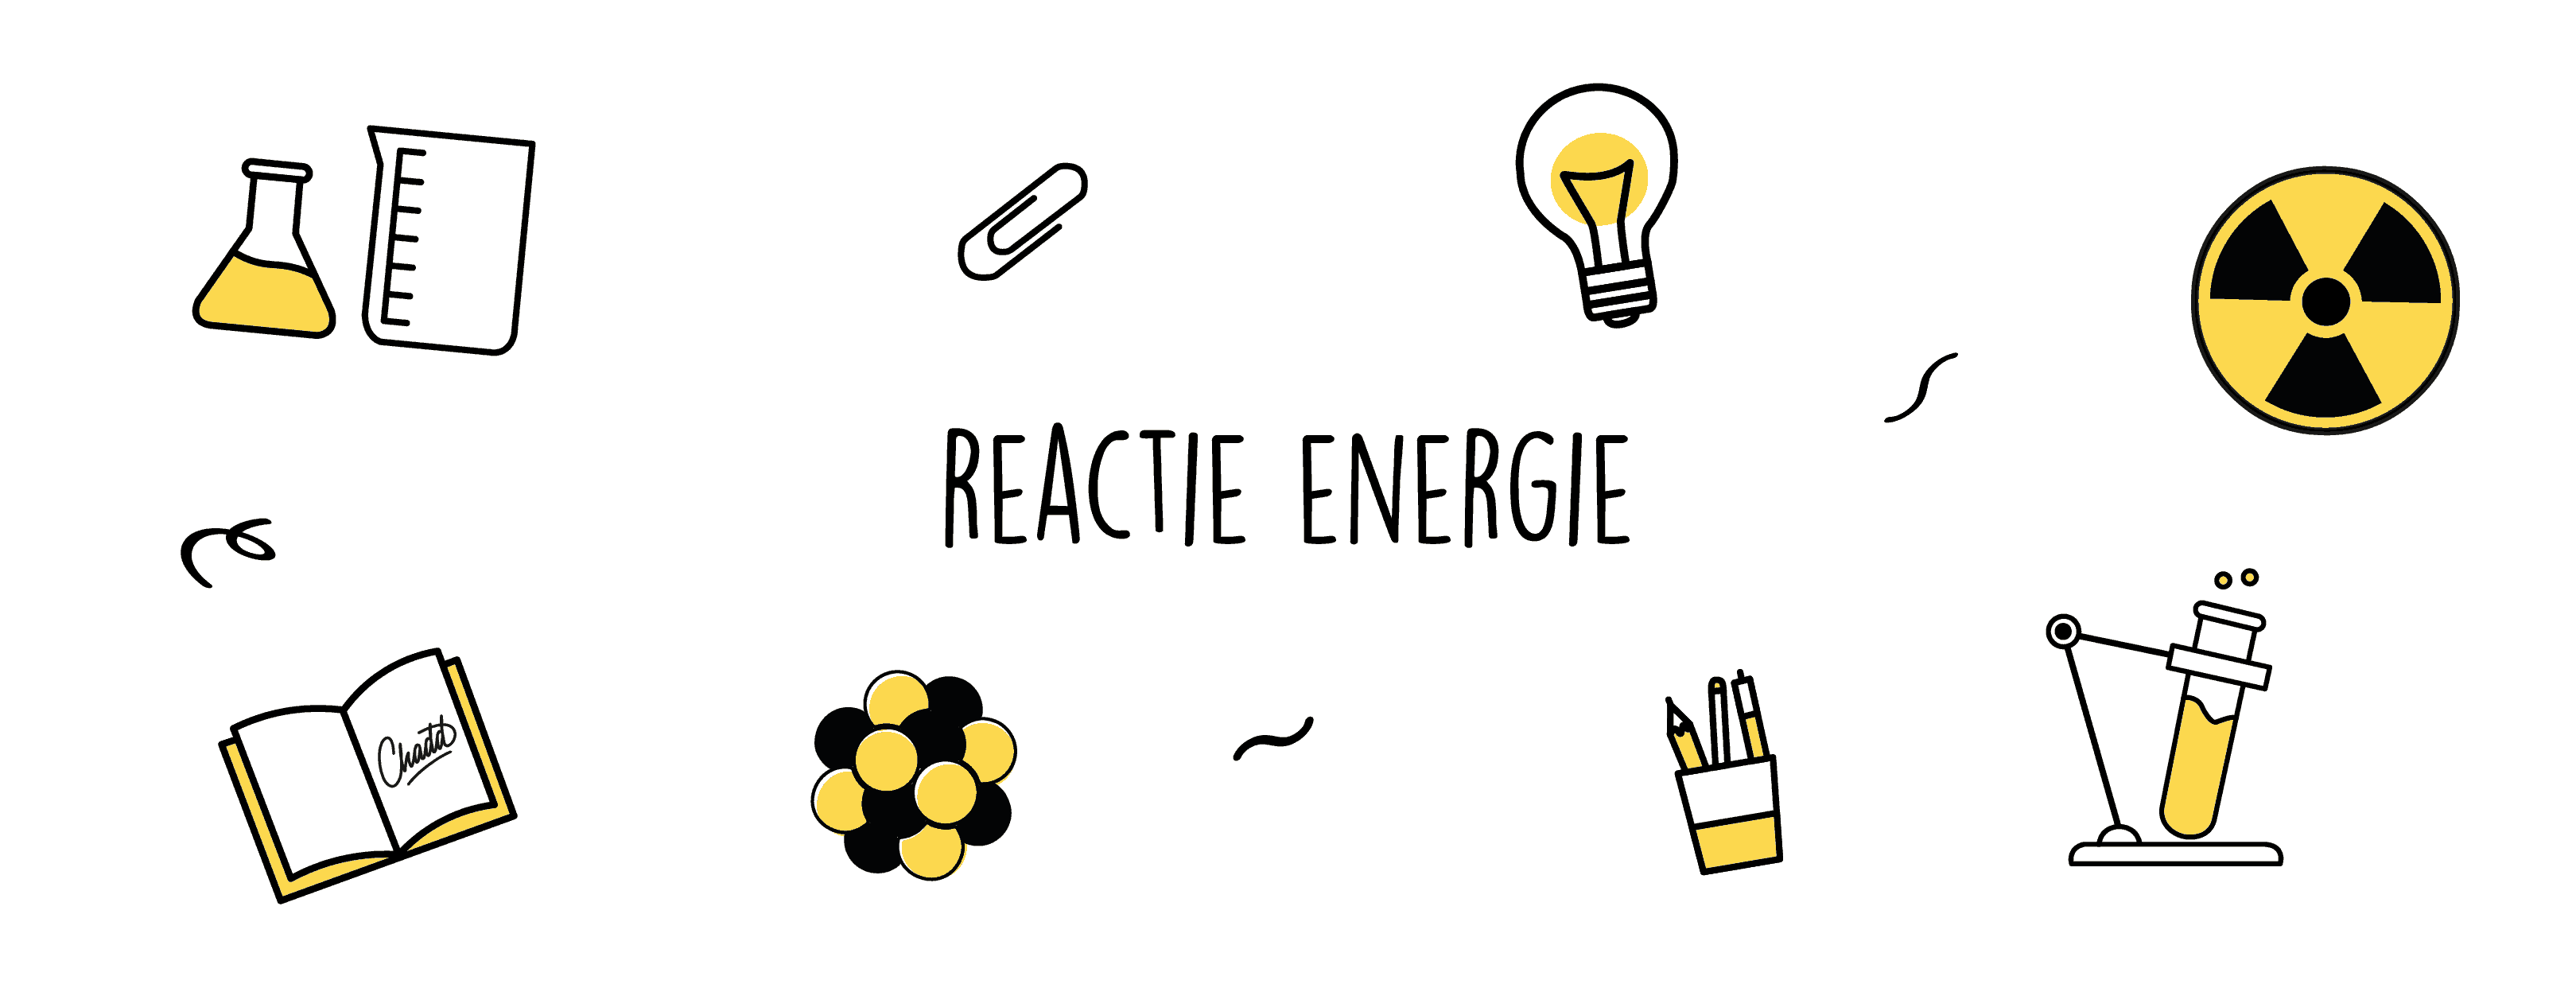 reactie energie